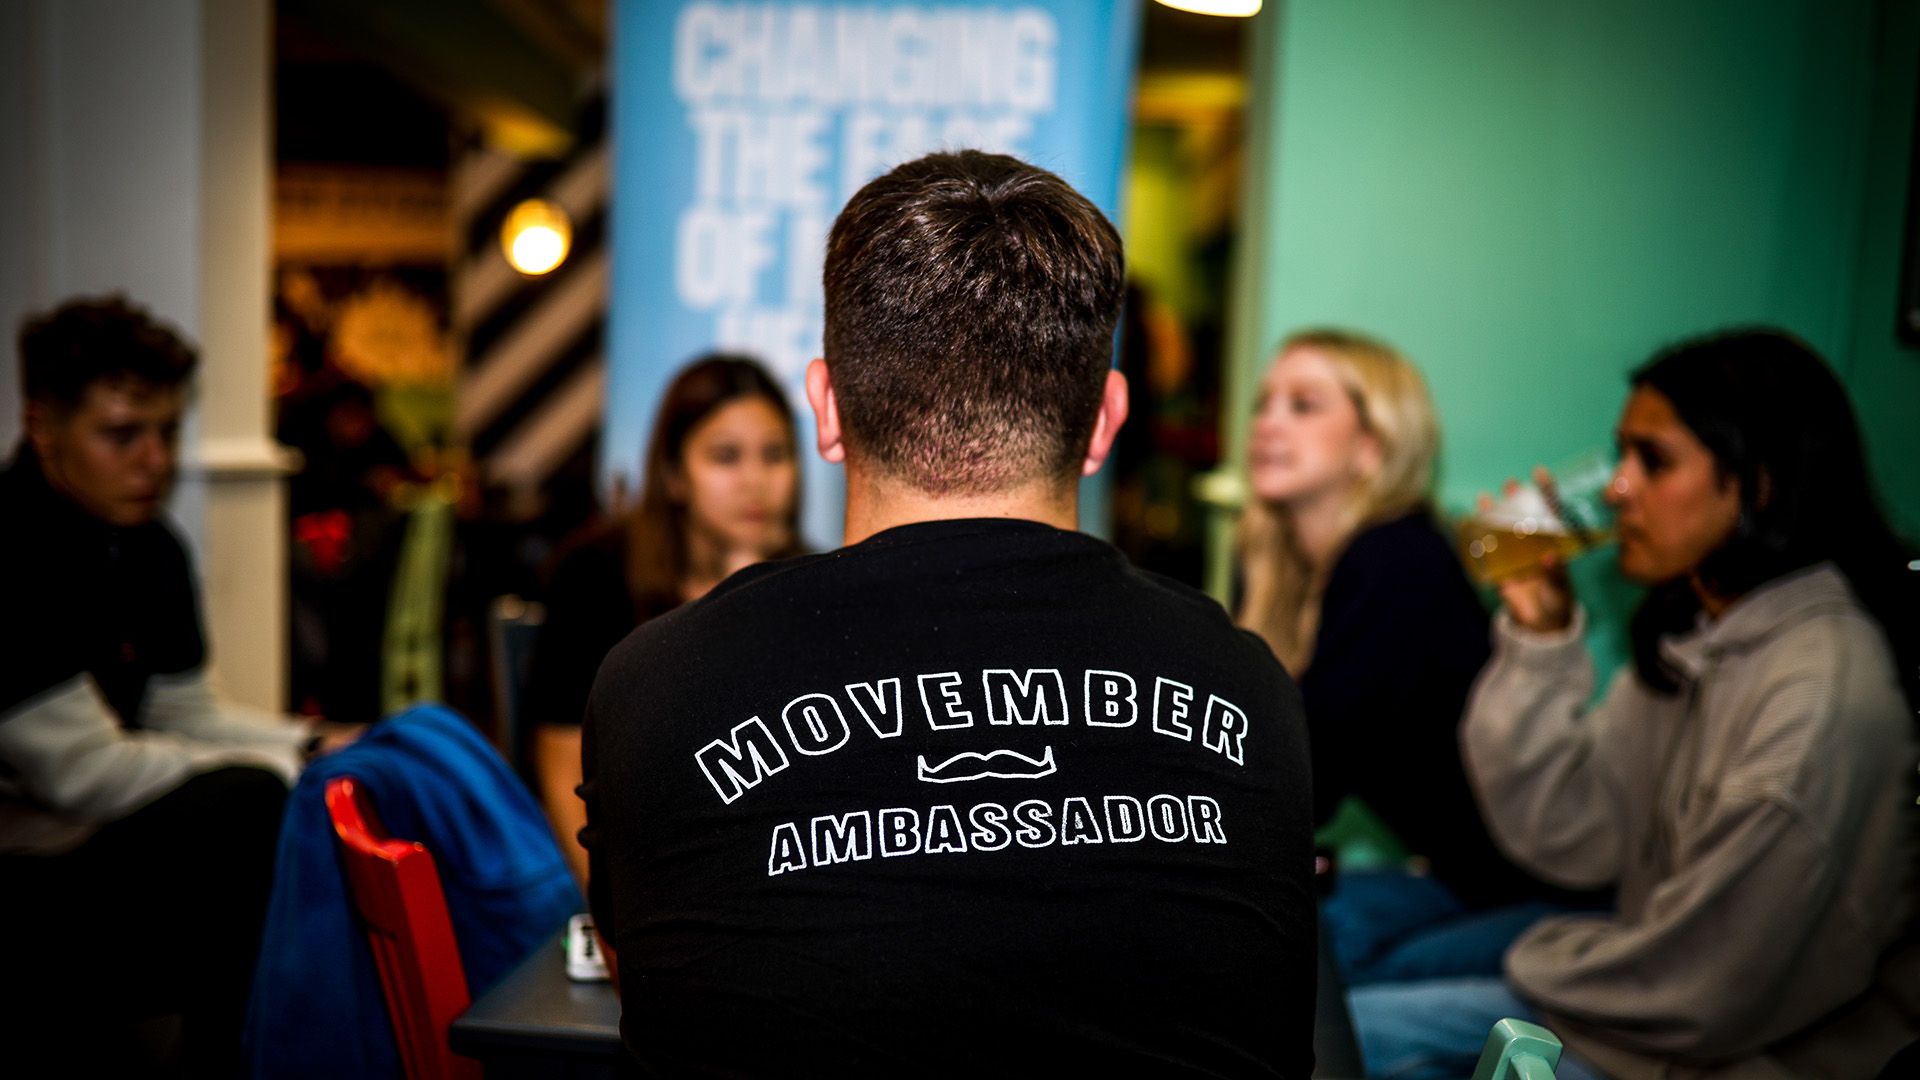 Photo of a man at a party, wearing a black shirt that says: "Movember ambassador".